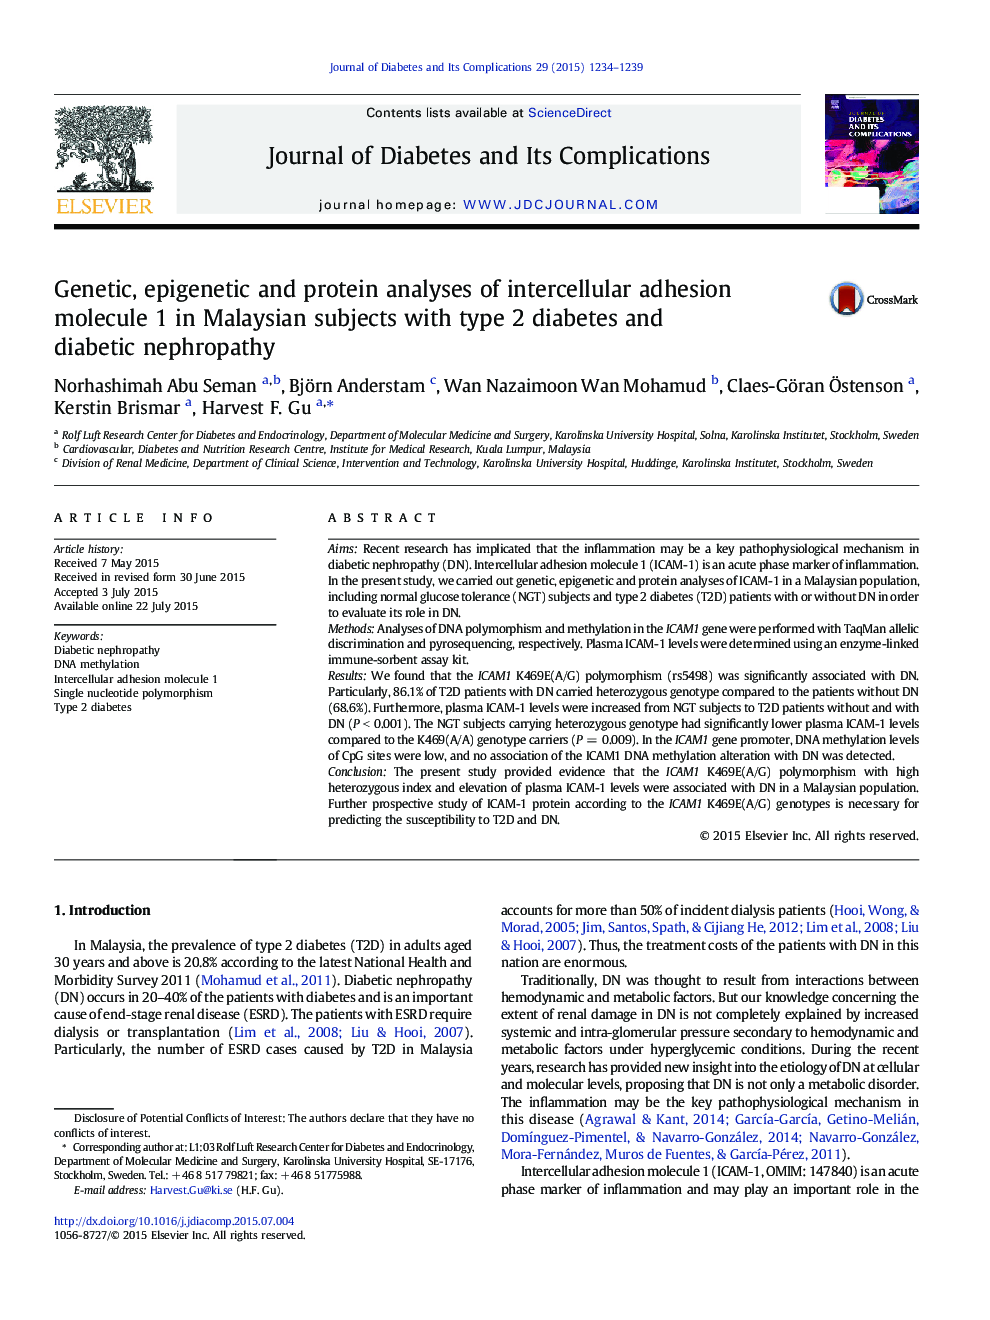 بررسی ژنتیکی، اپی ژنتیک و پروتئین مولکول چسبندگی بین سلولی 1 در افراد مالزیایی مبتلا به دیابت نوع 2 و نفروپاتی دیابتی 